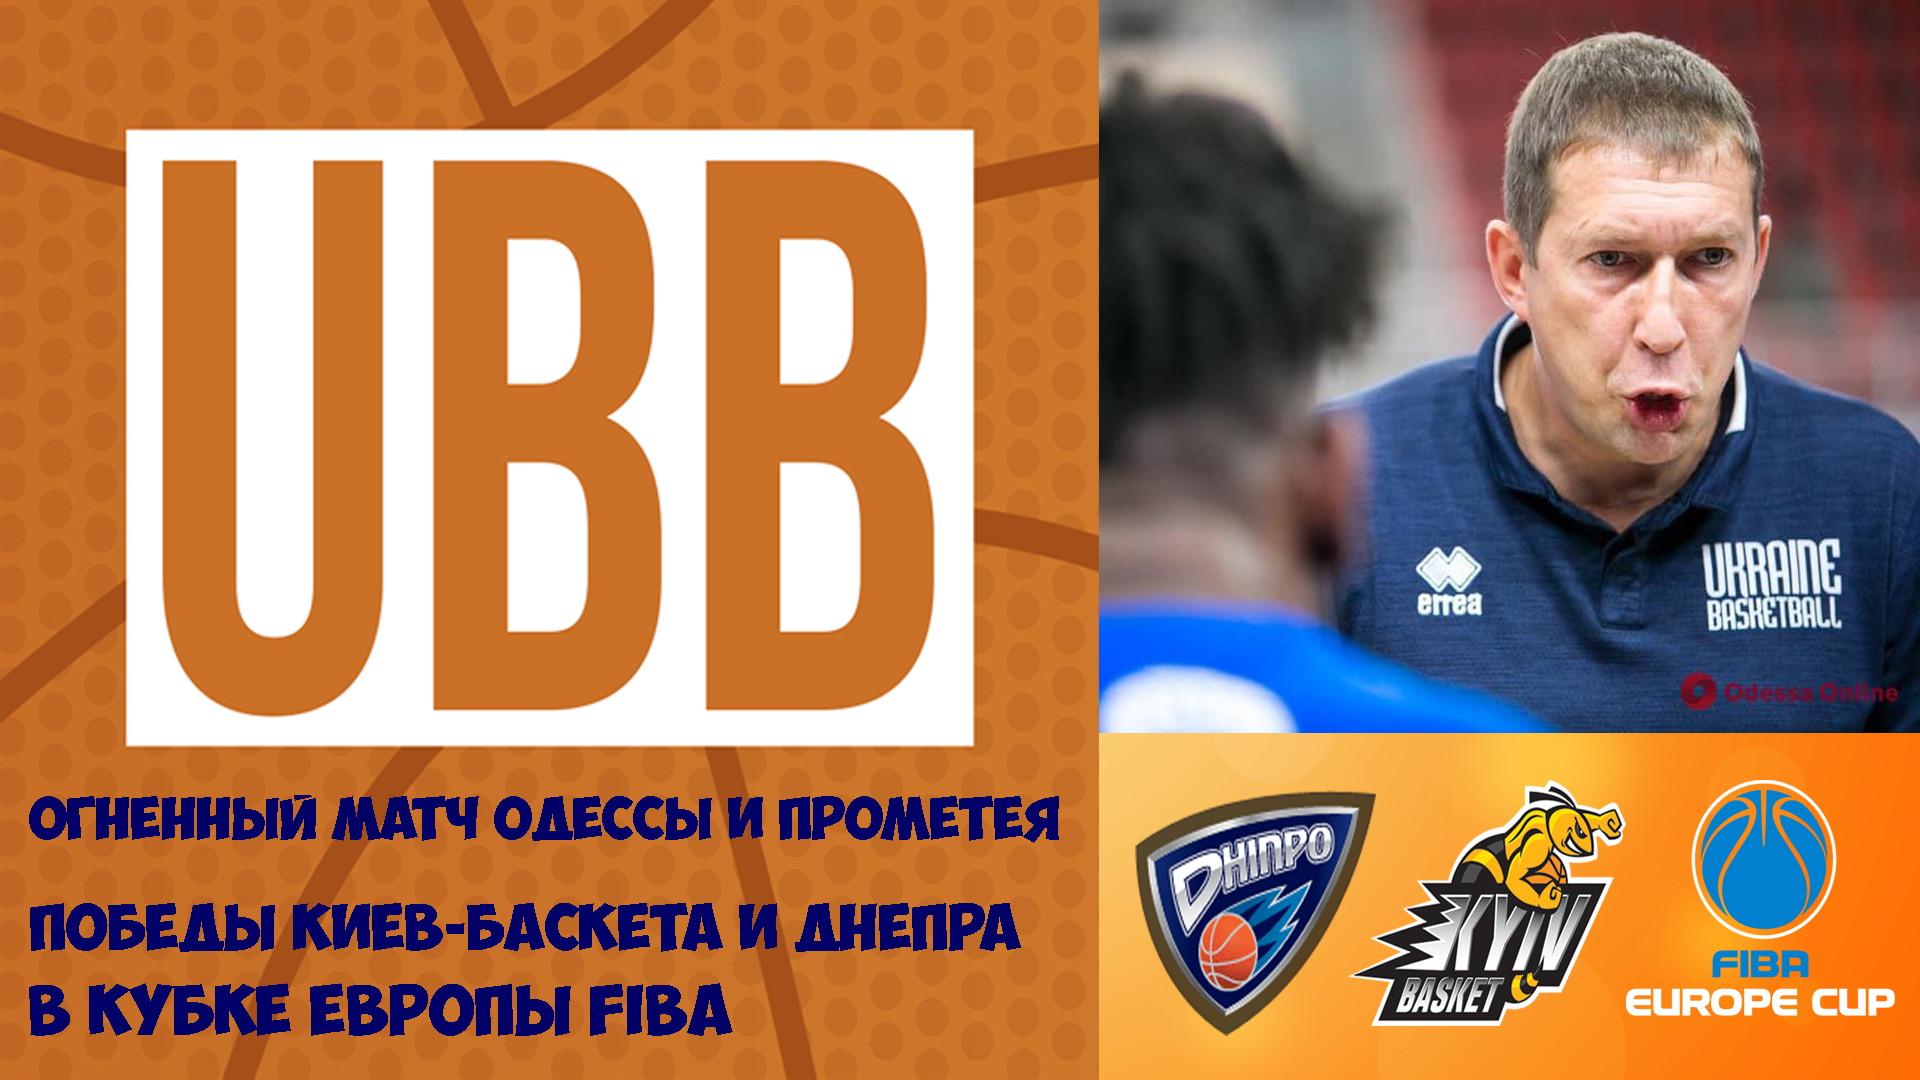 Победы Днепра и Киев-Баскета в Кубке Европы FIBA, рекорд Михайлюка и огненный матч в Одессе